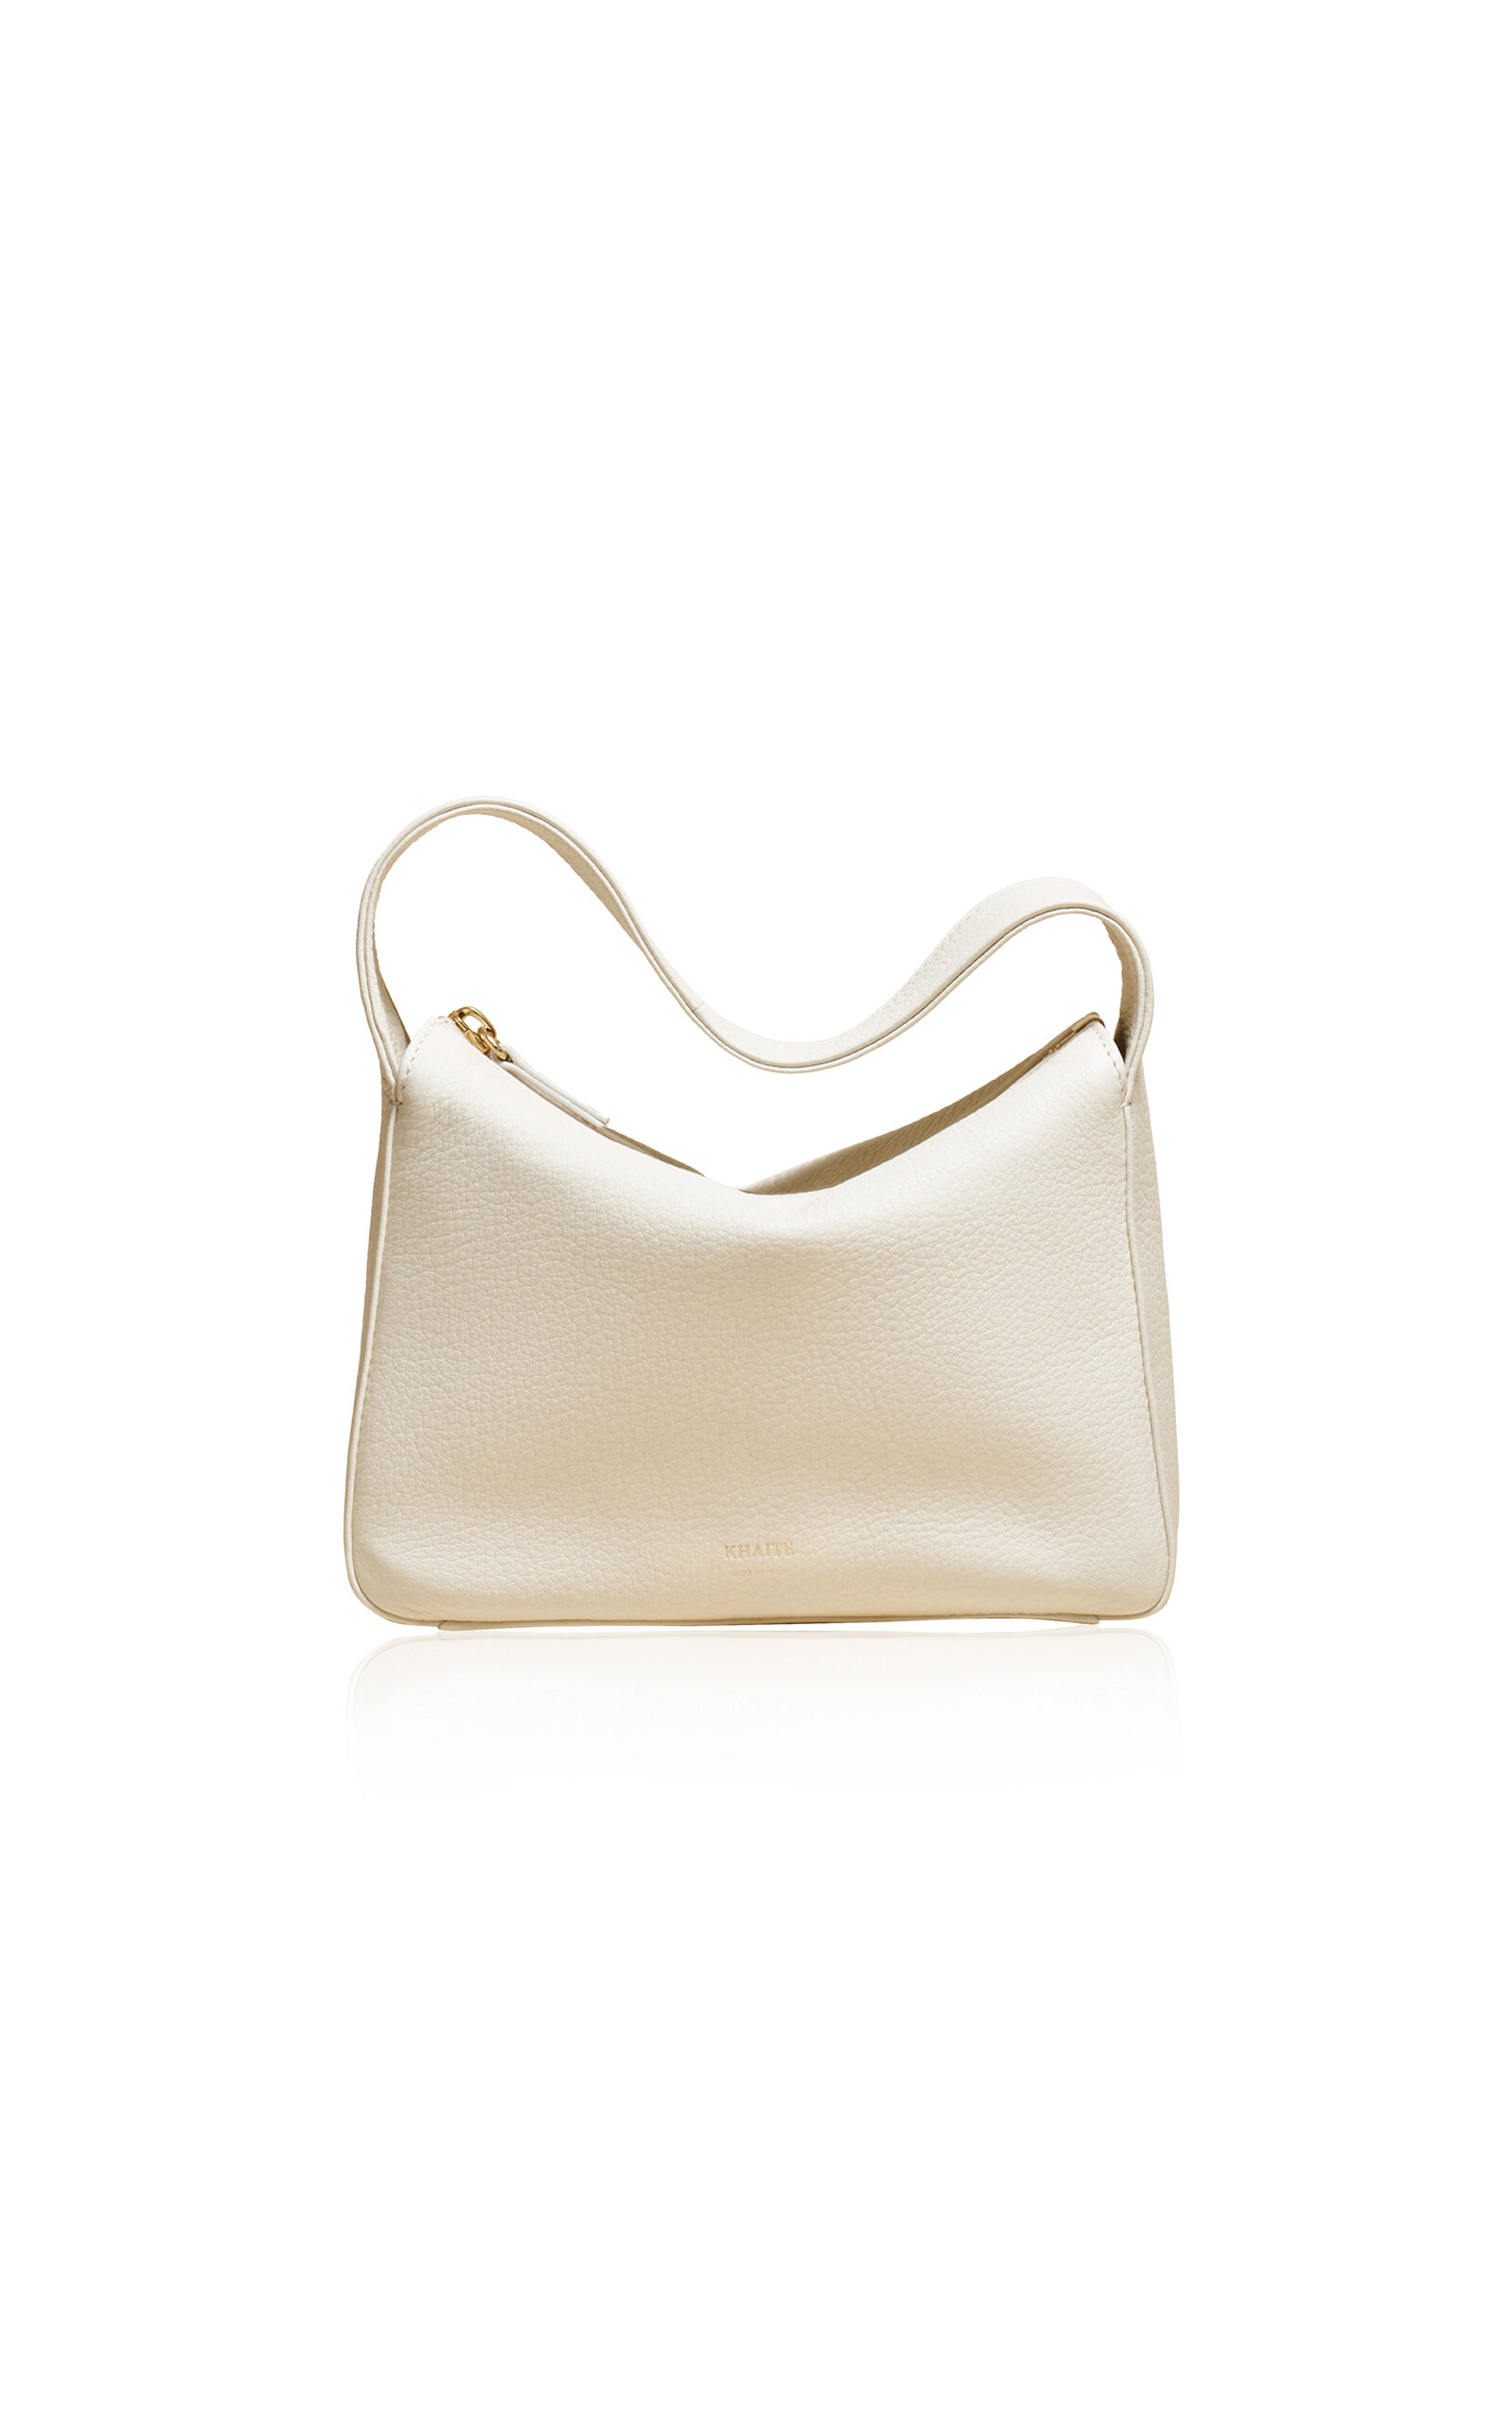 Khaite - Elena Small Leather Bag - Off-White - OS - Moda Operandi